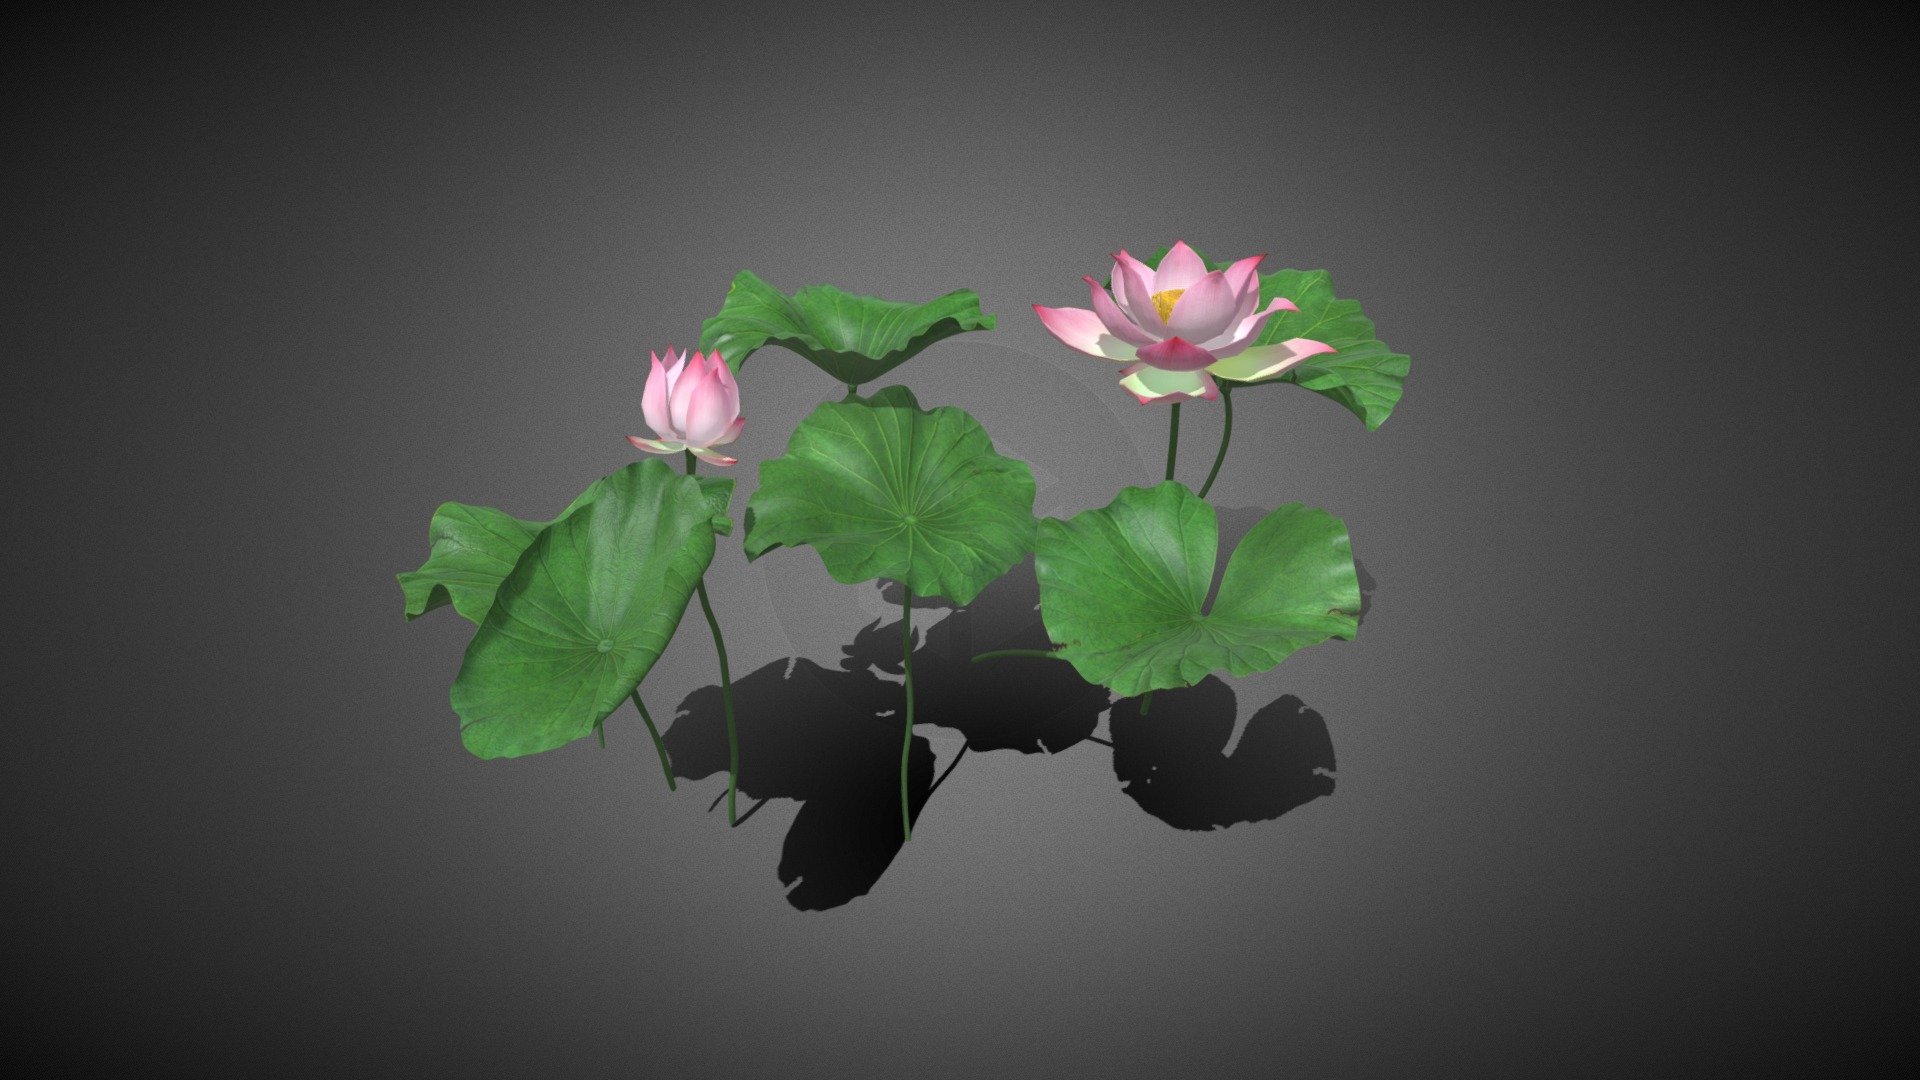 Lotus - Lotus - Buy Royalty Free 3D model by misitewang 3d model